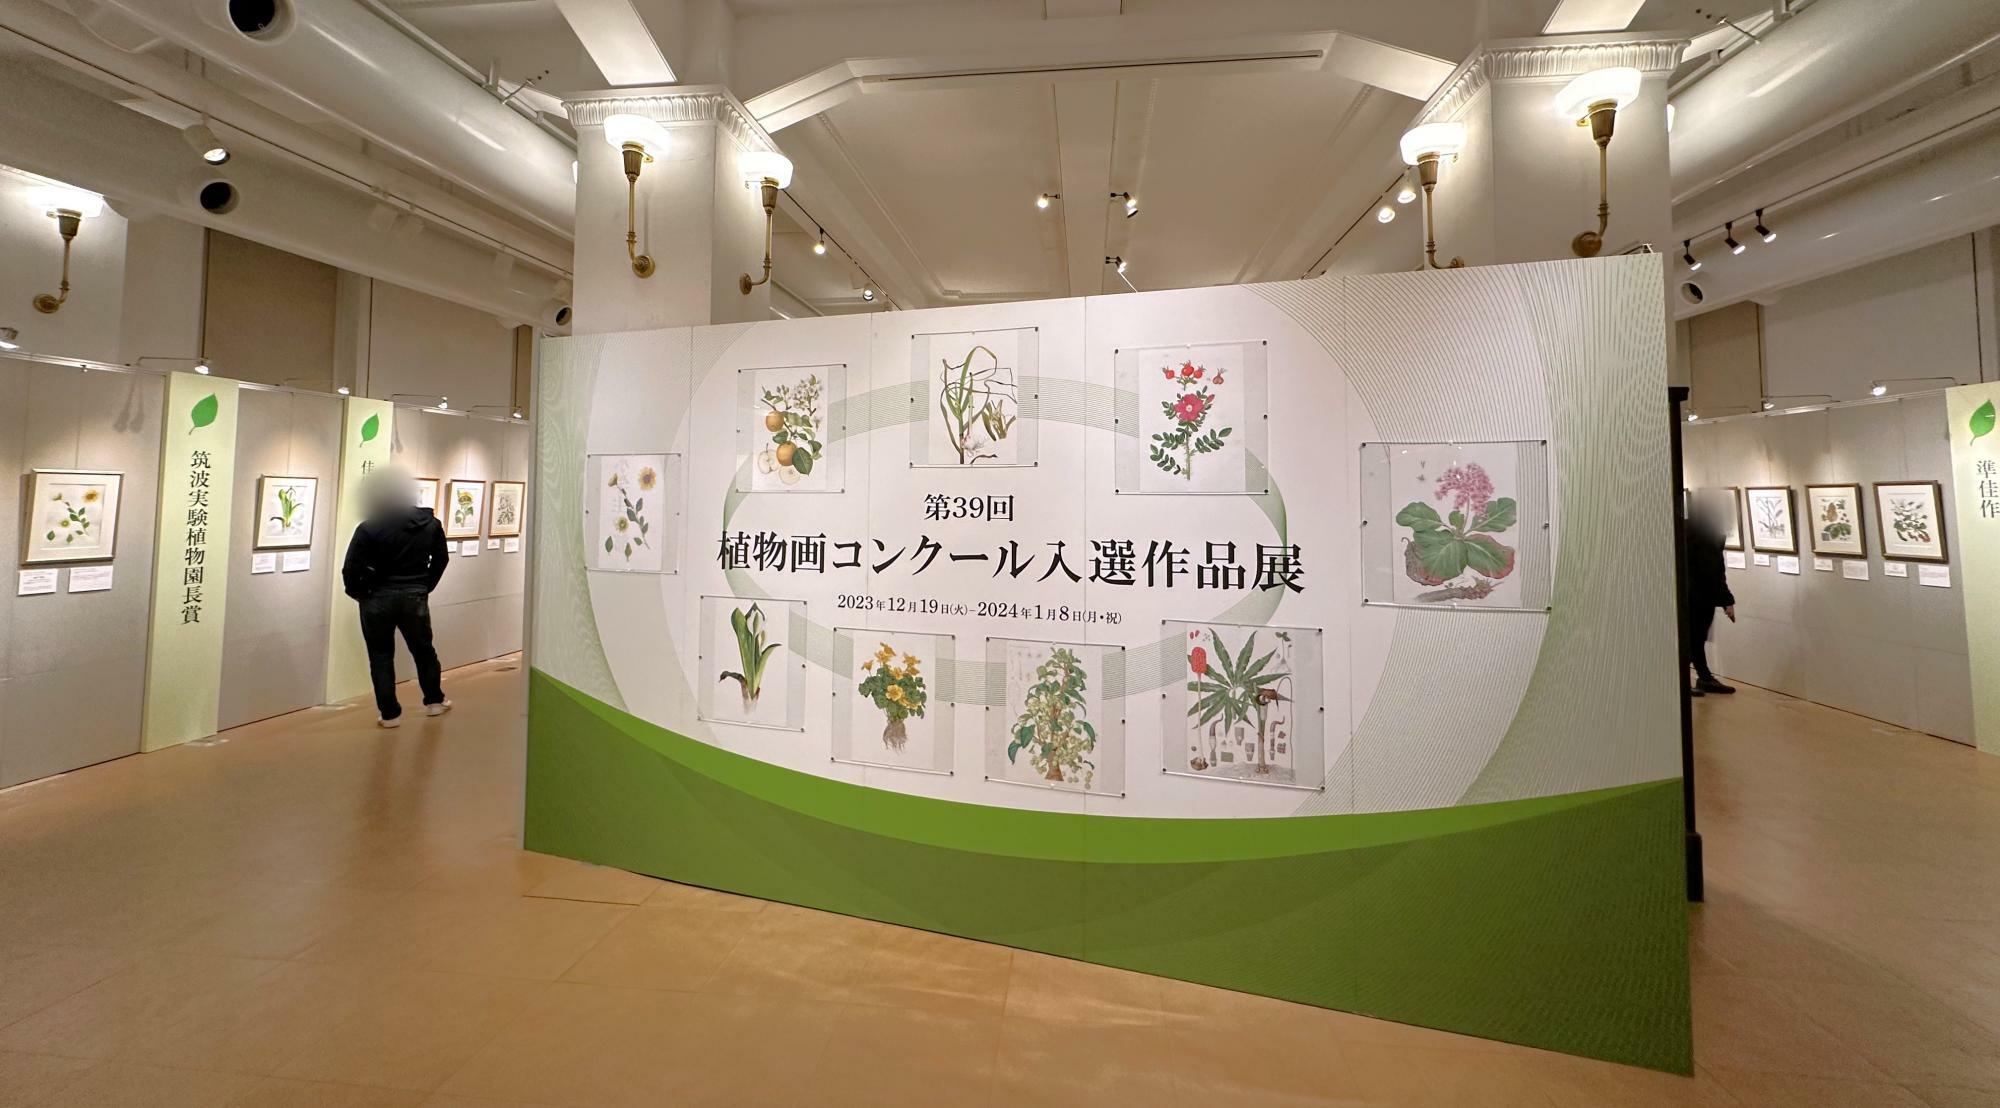 「第39回植物画コンクール入選作品展」会場の様子